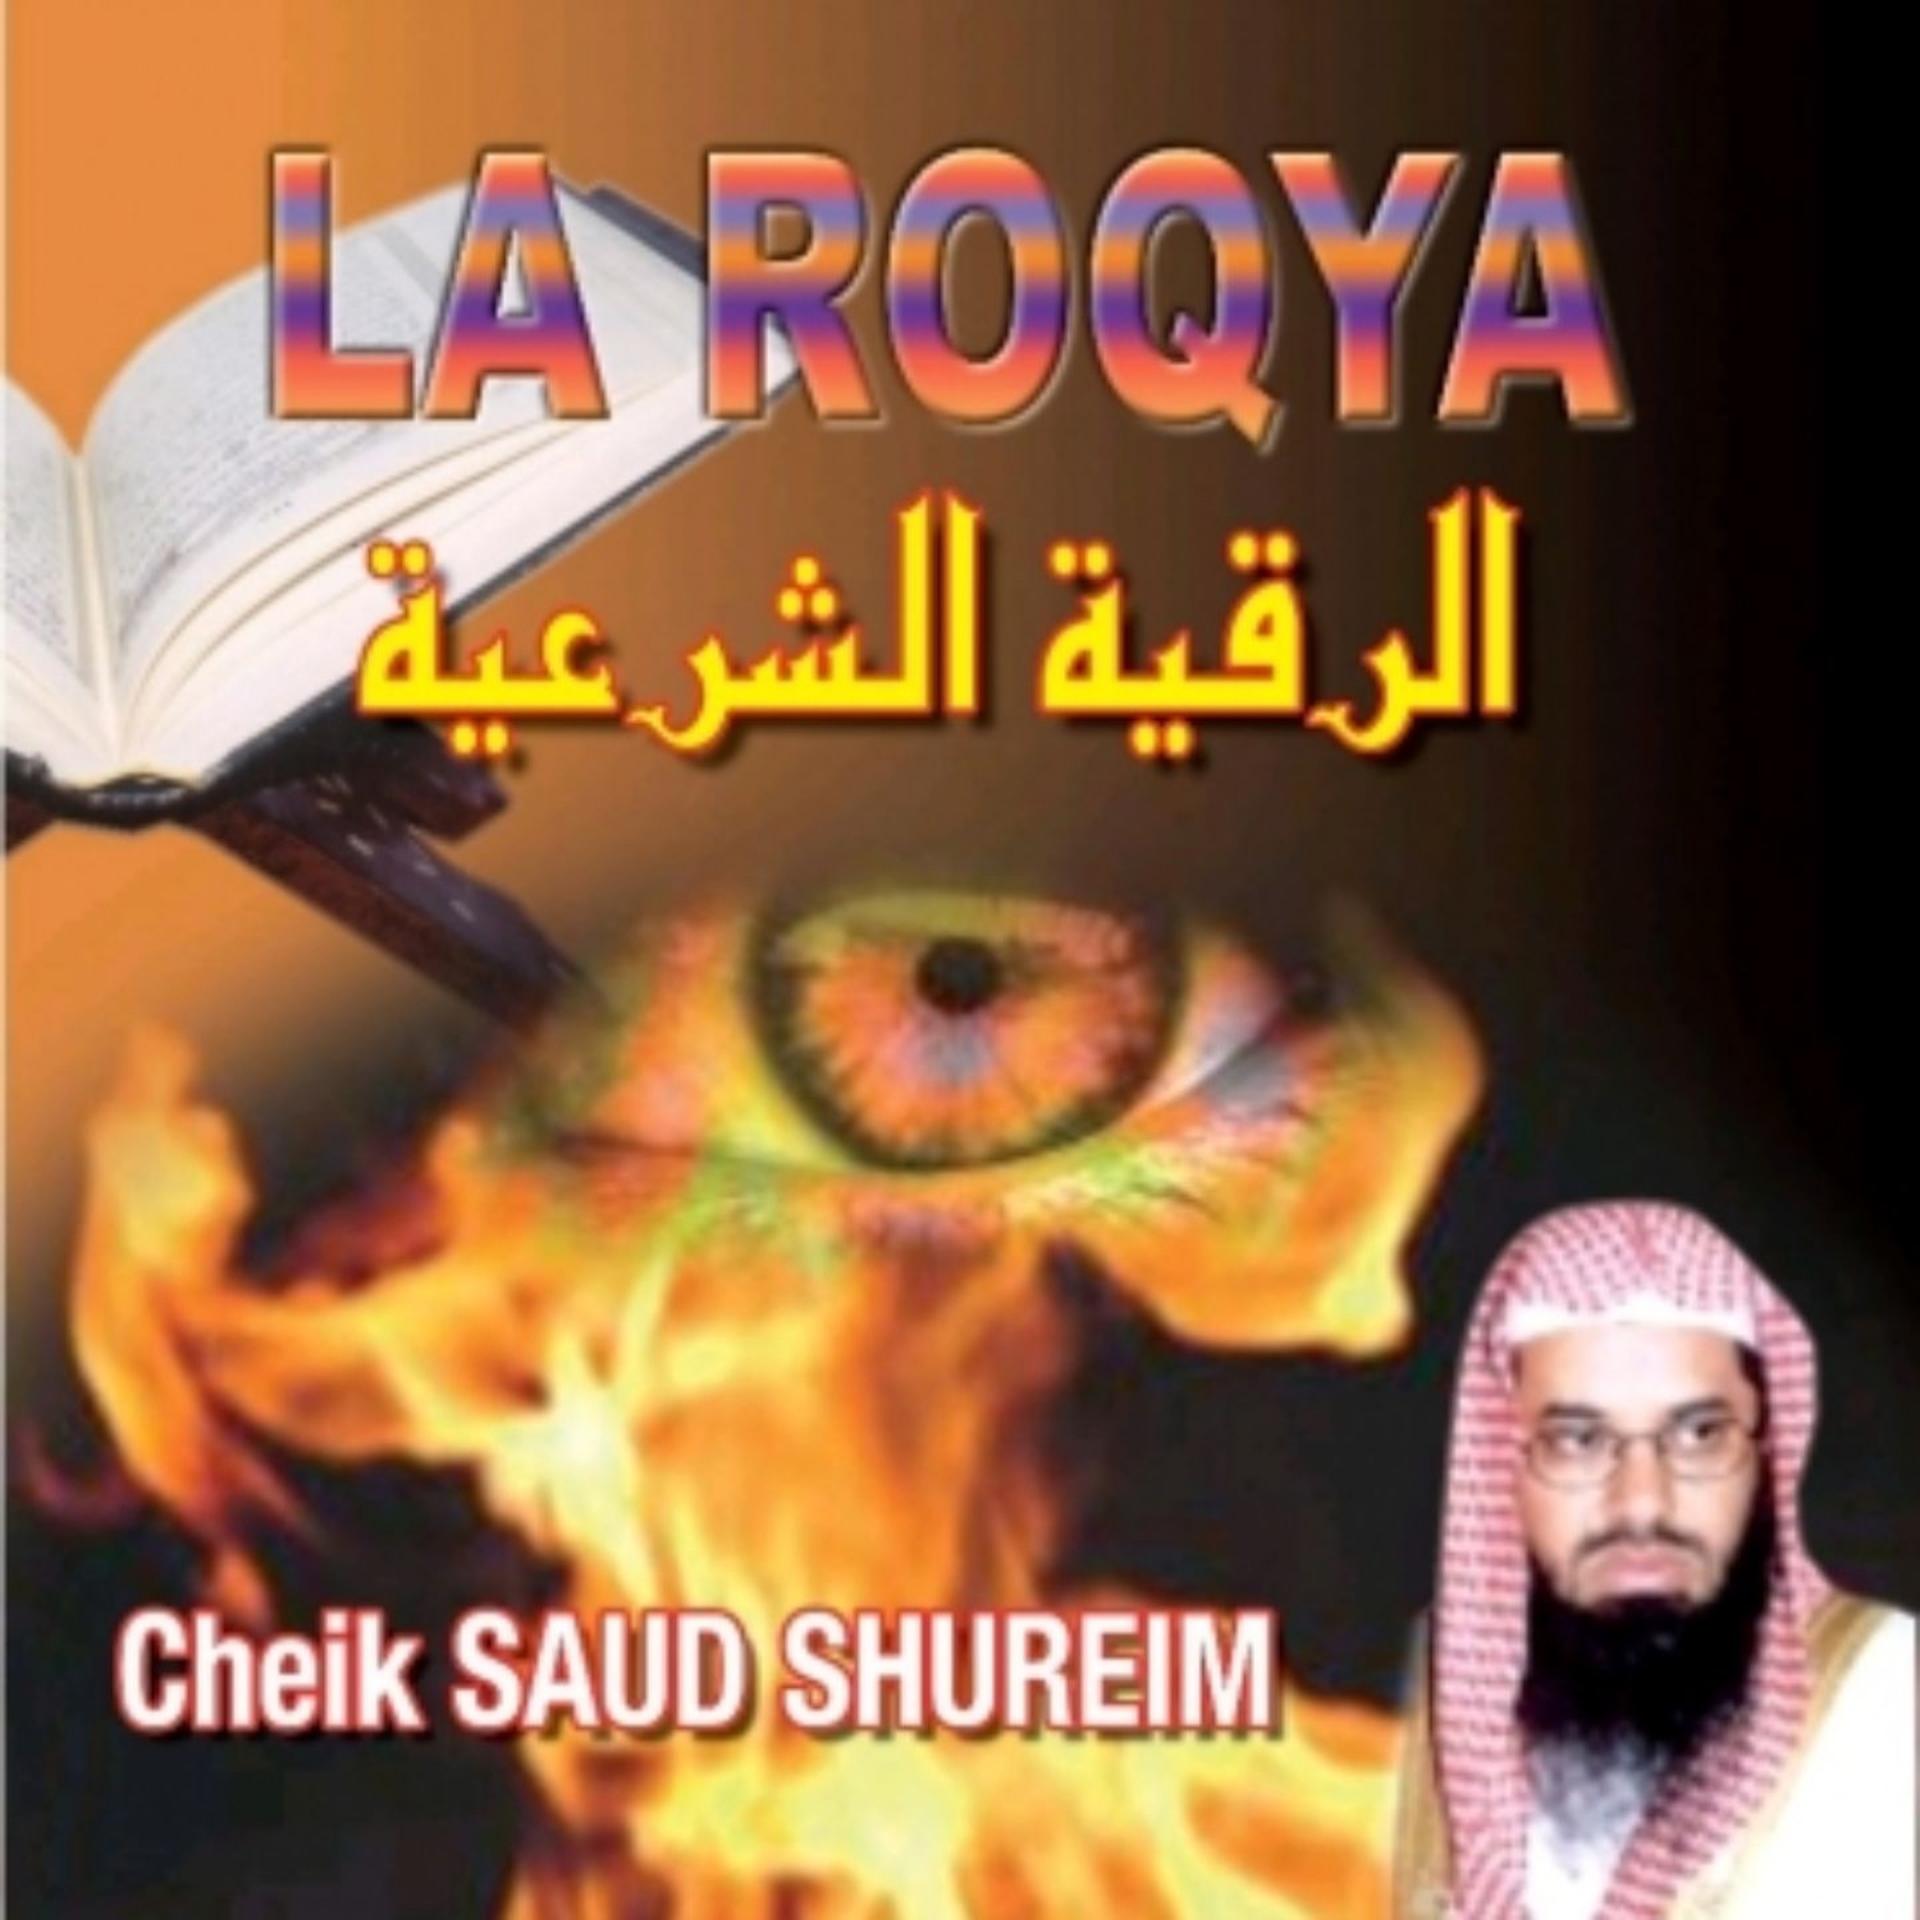 Постер альбома La Roqya - Quran - Coran - Récitation Coranique